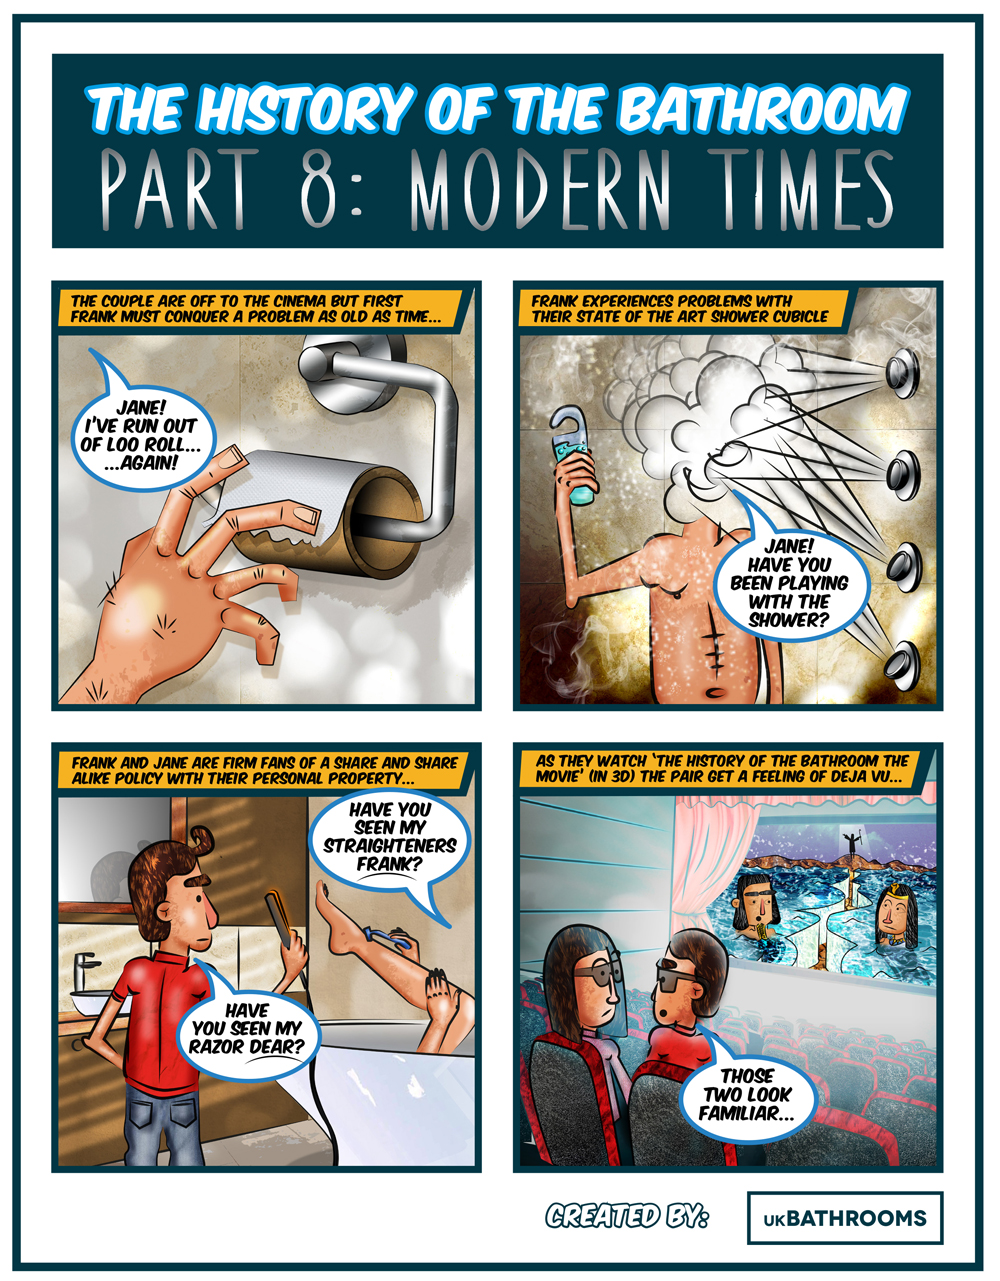 Part 8 Modern Times